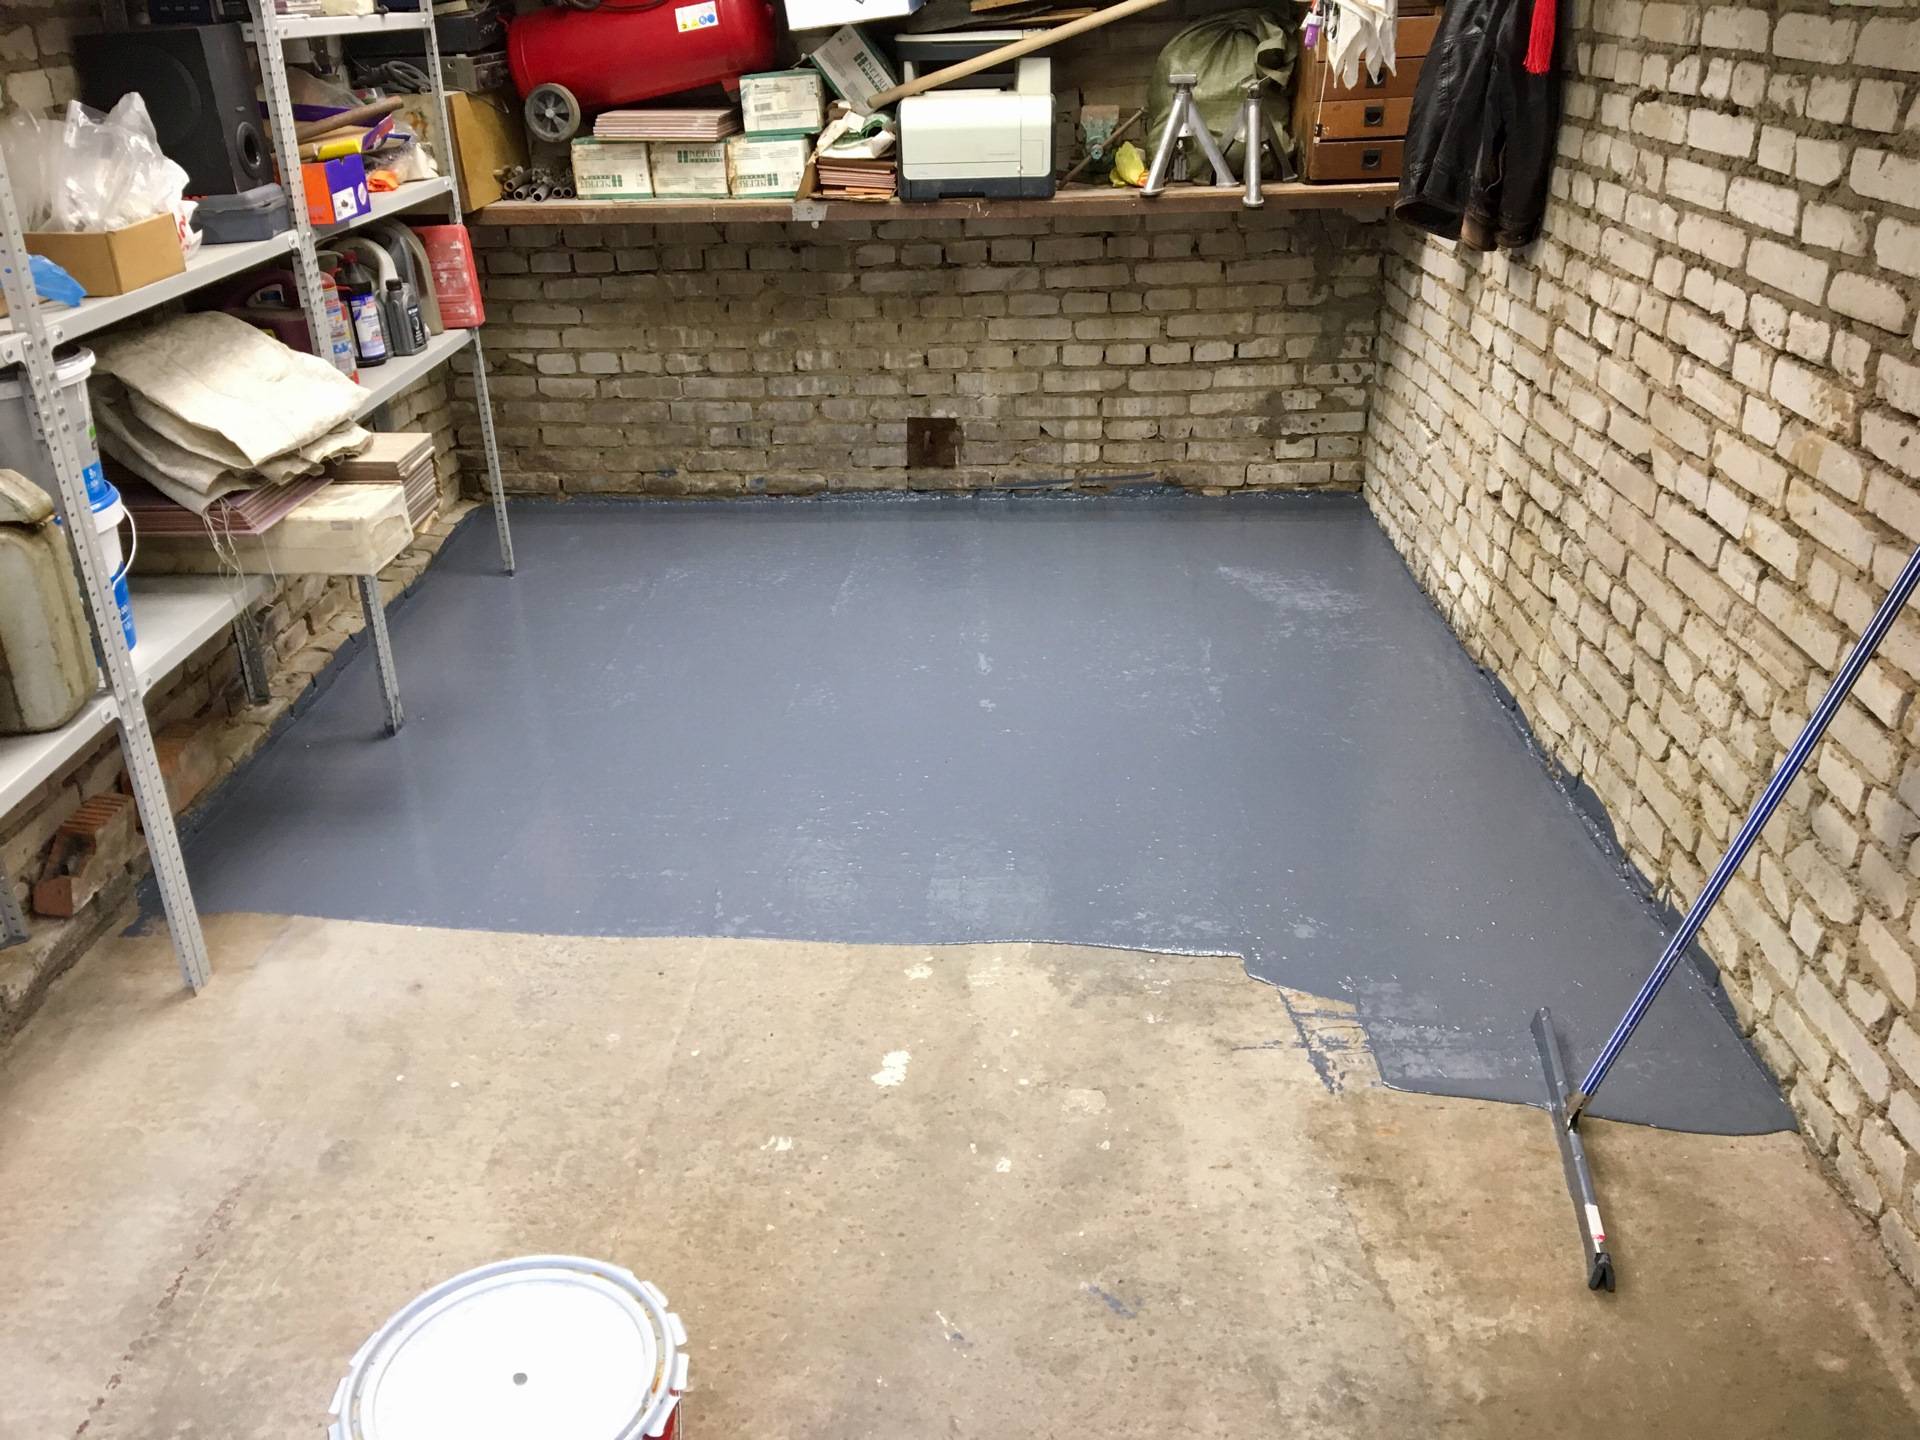 Покрытие бетонного пола: материалы для обустройства бетонного пола в гараже, их плюсы и минусы